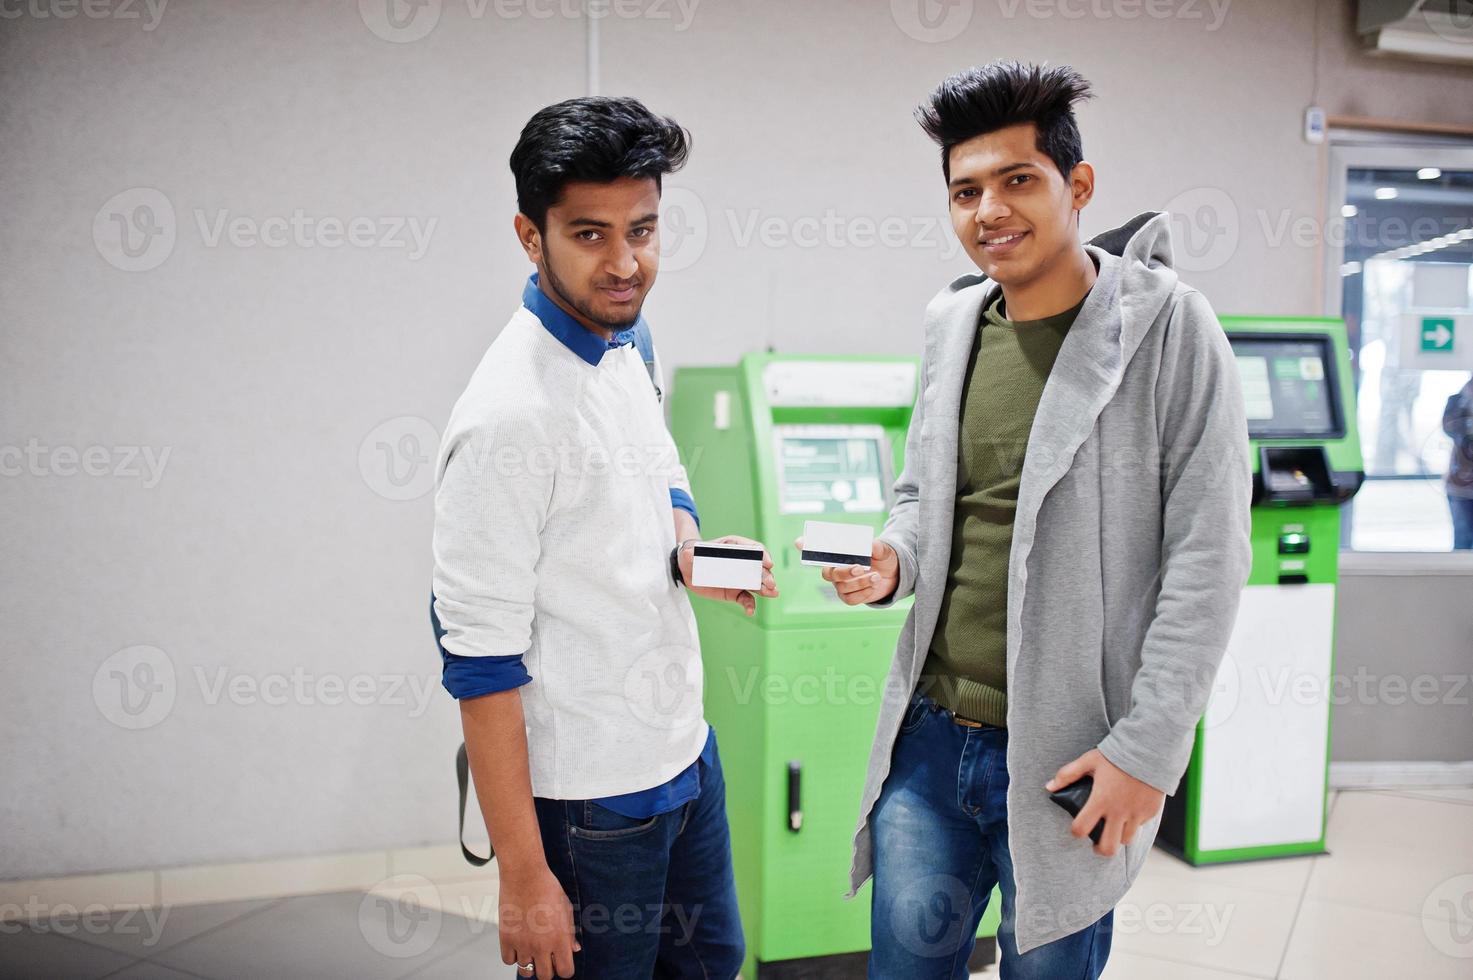 två asiatiska killar som håller kreditkort i handen mot grön bankomat. foto